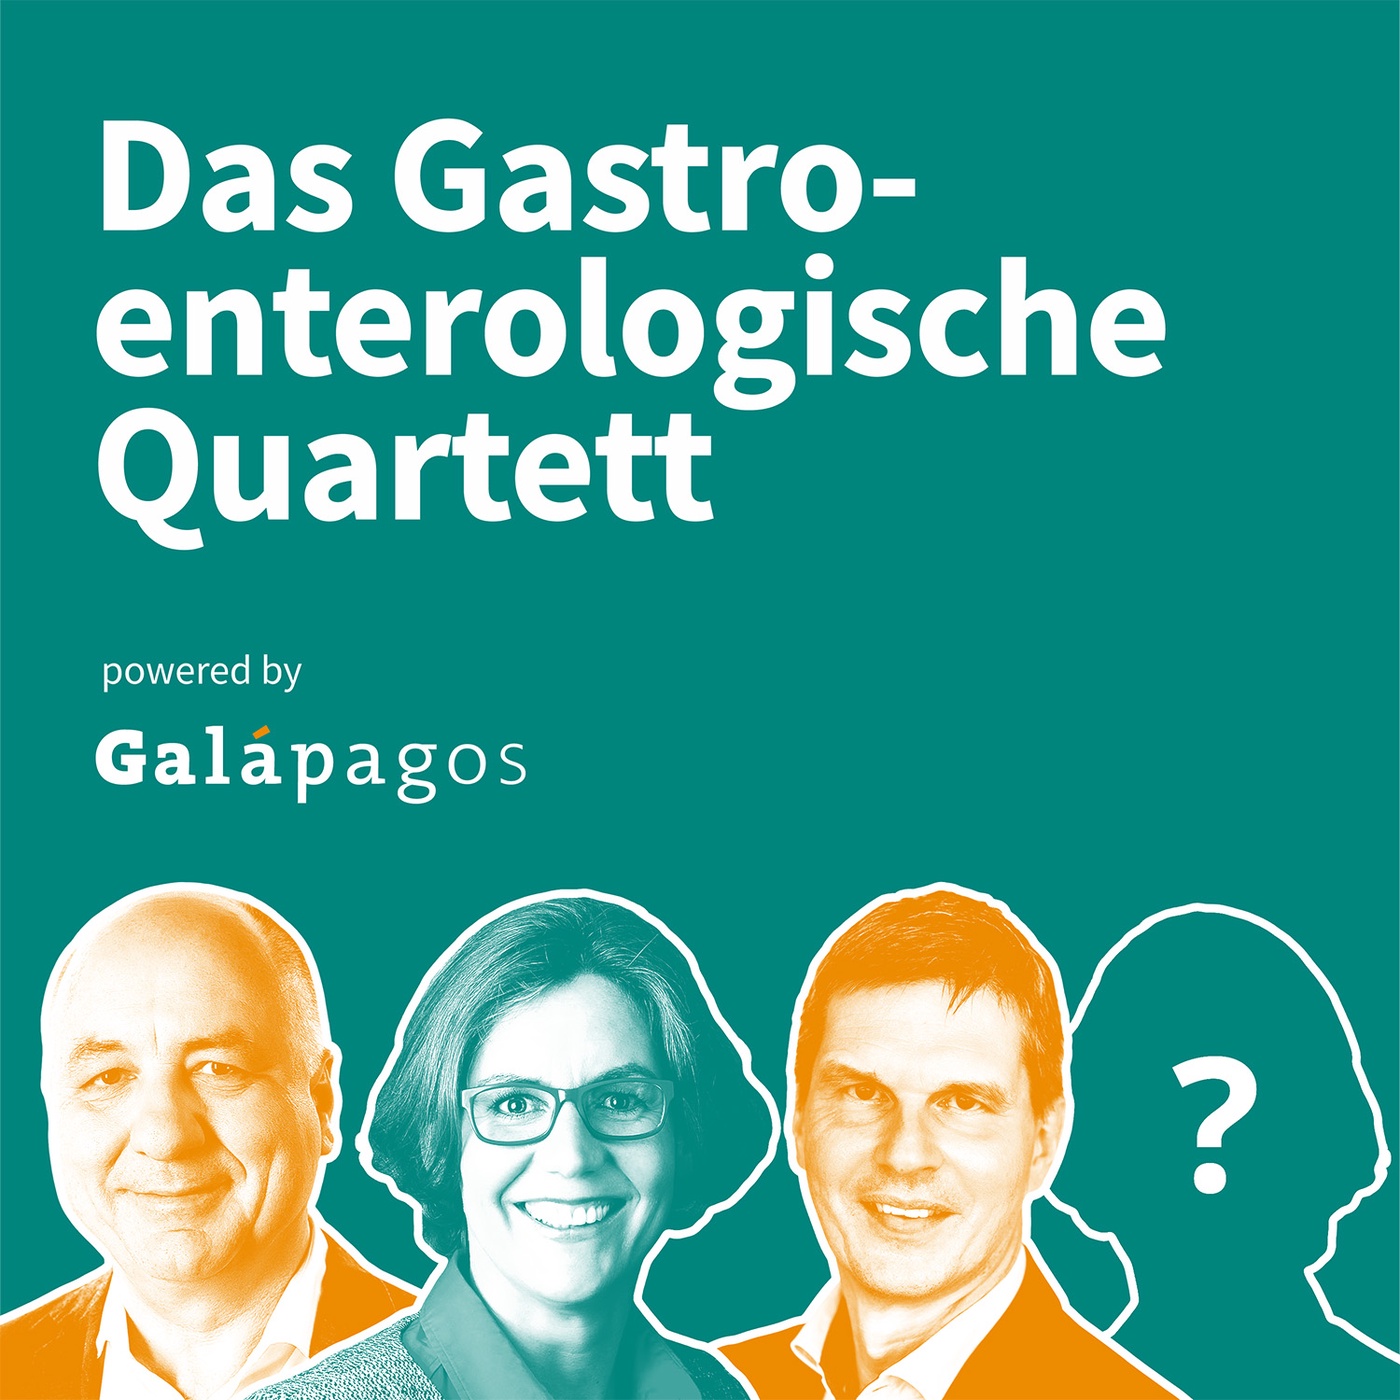 Das Gastroenterologische Quartett